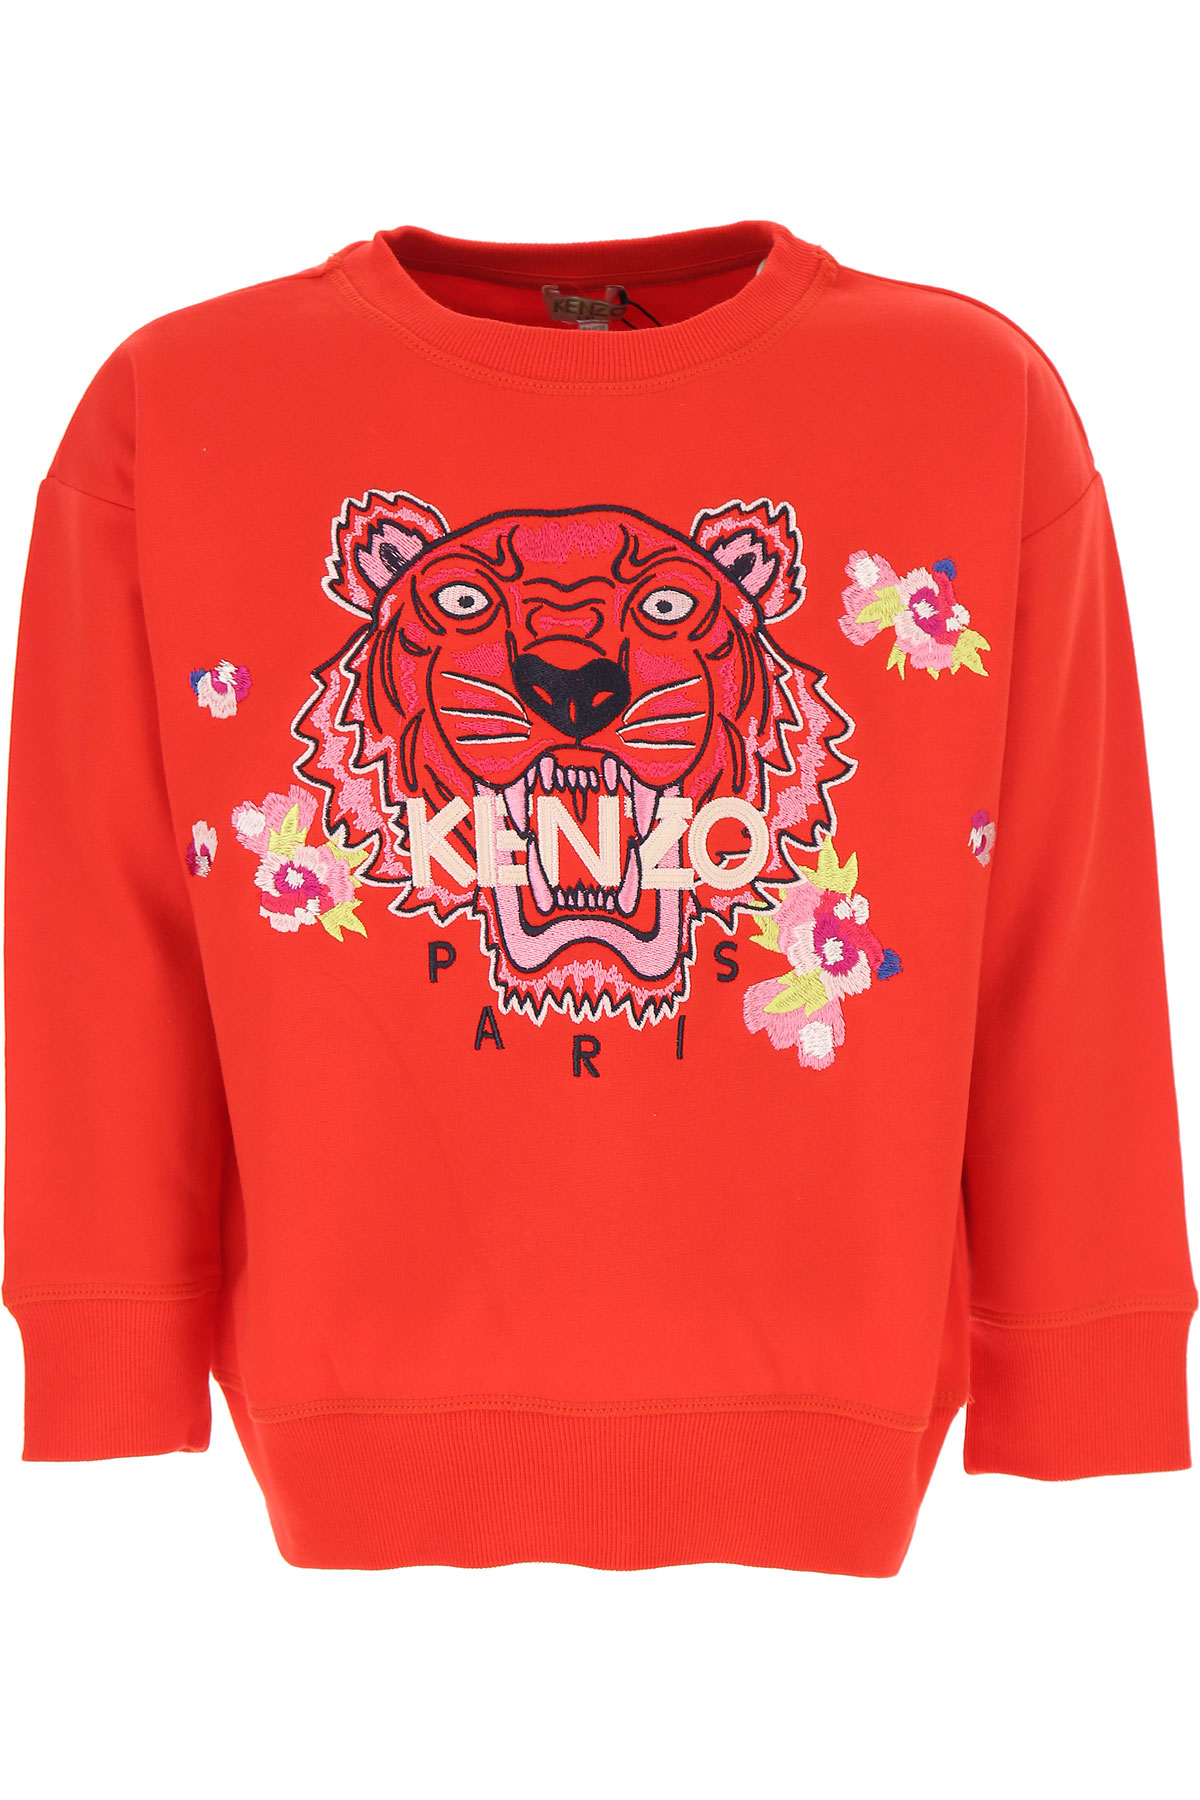 Kenzo Kinder Sweatshirt & Kapuzenpullover für Mädchen Günstig im Sale, Rot, Baumwolle, 2017, 10Y 10Y 12Y 14Y 2Y 3Y 4Y 6Y 8Y 8Y